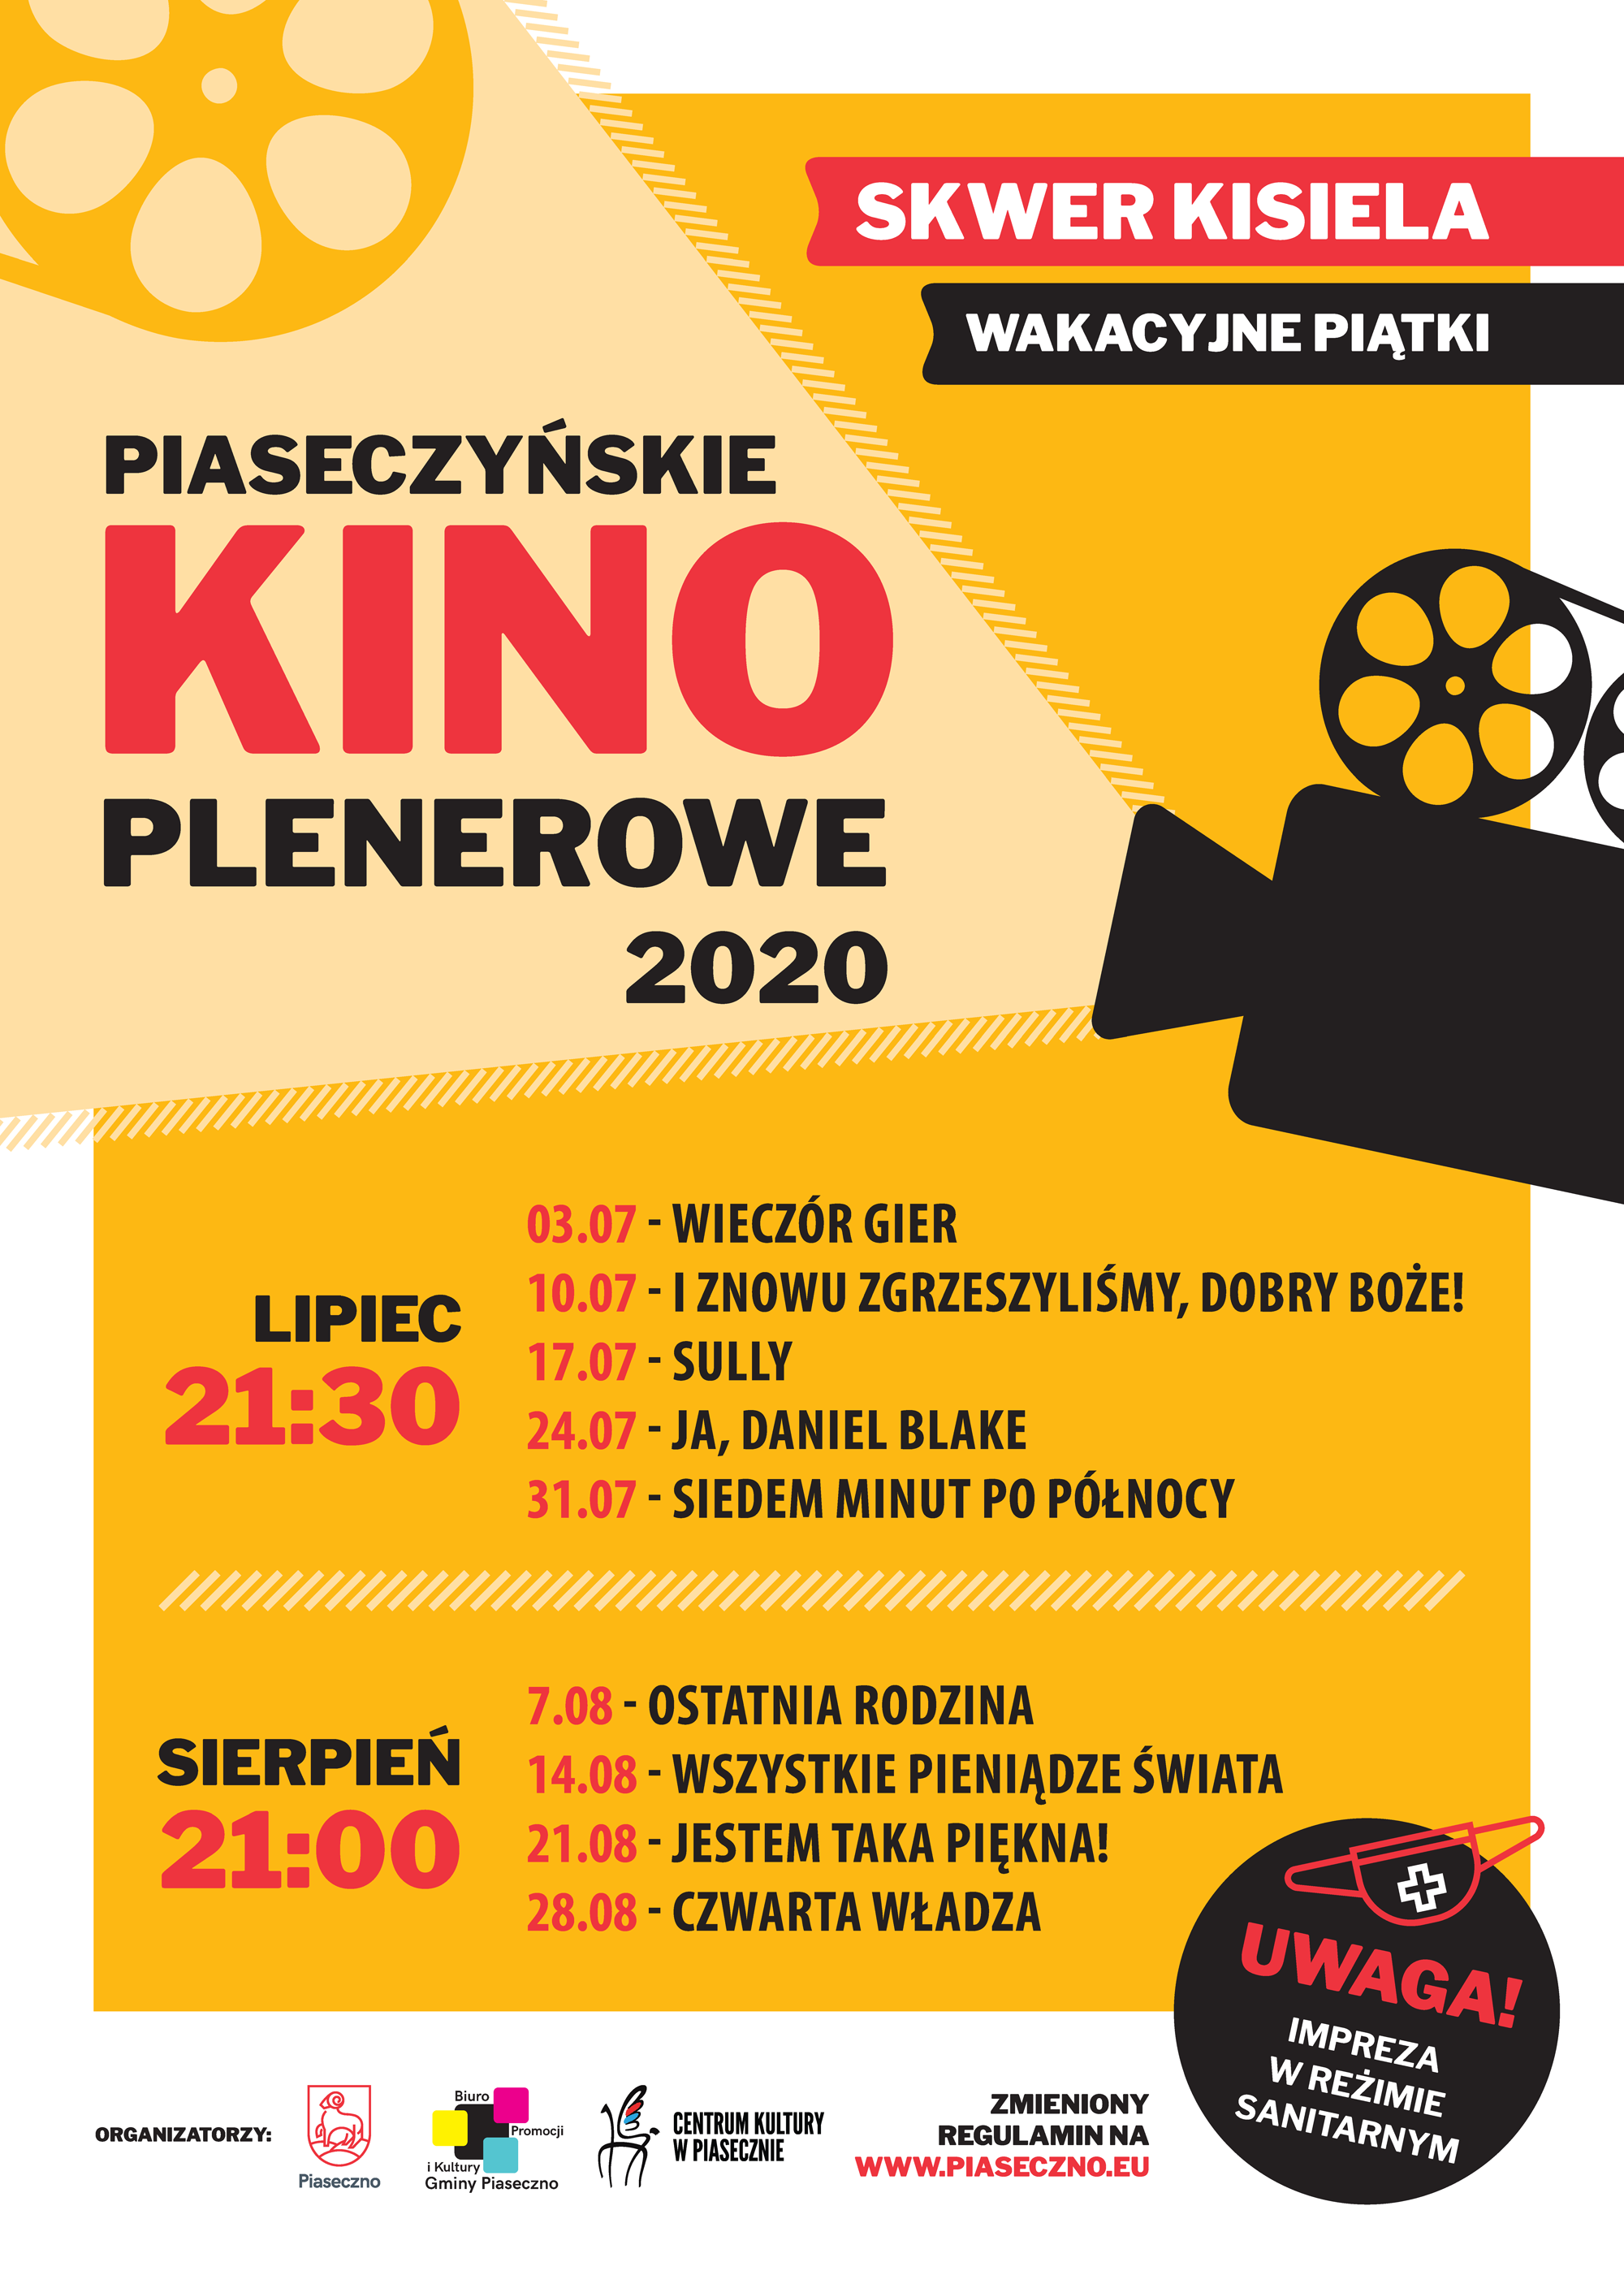 Piaseczyńskie Kino Plenerowe - skwer Kisiela Piaseczno 2020